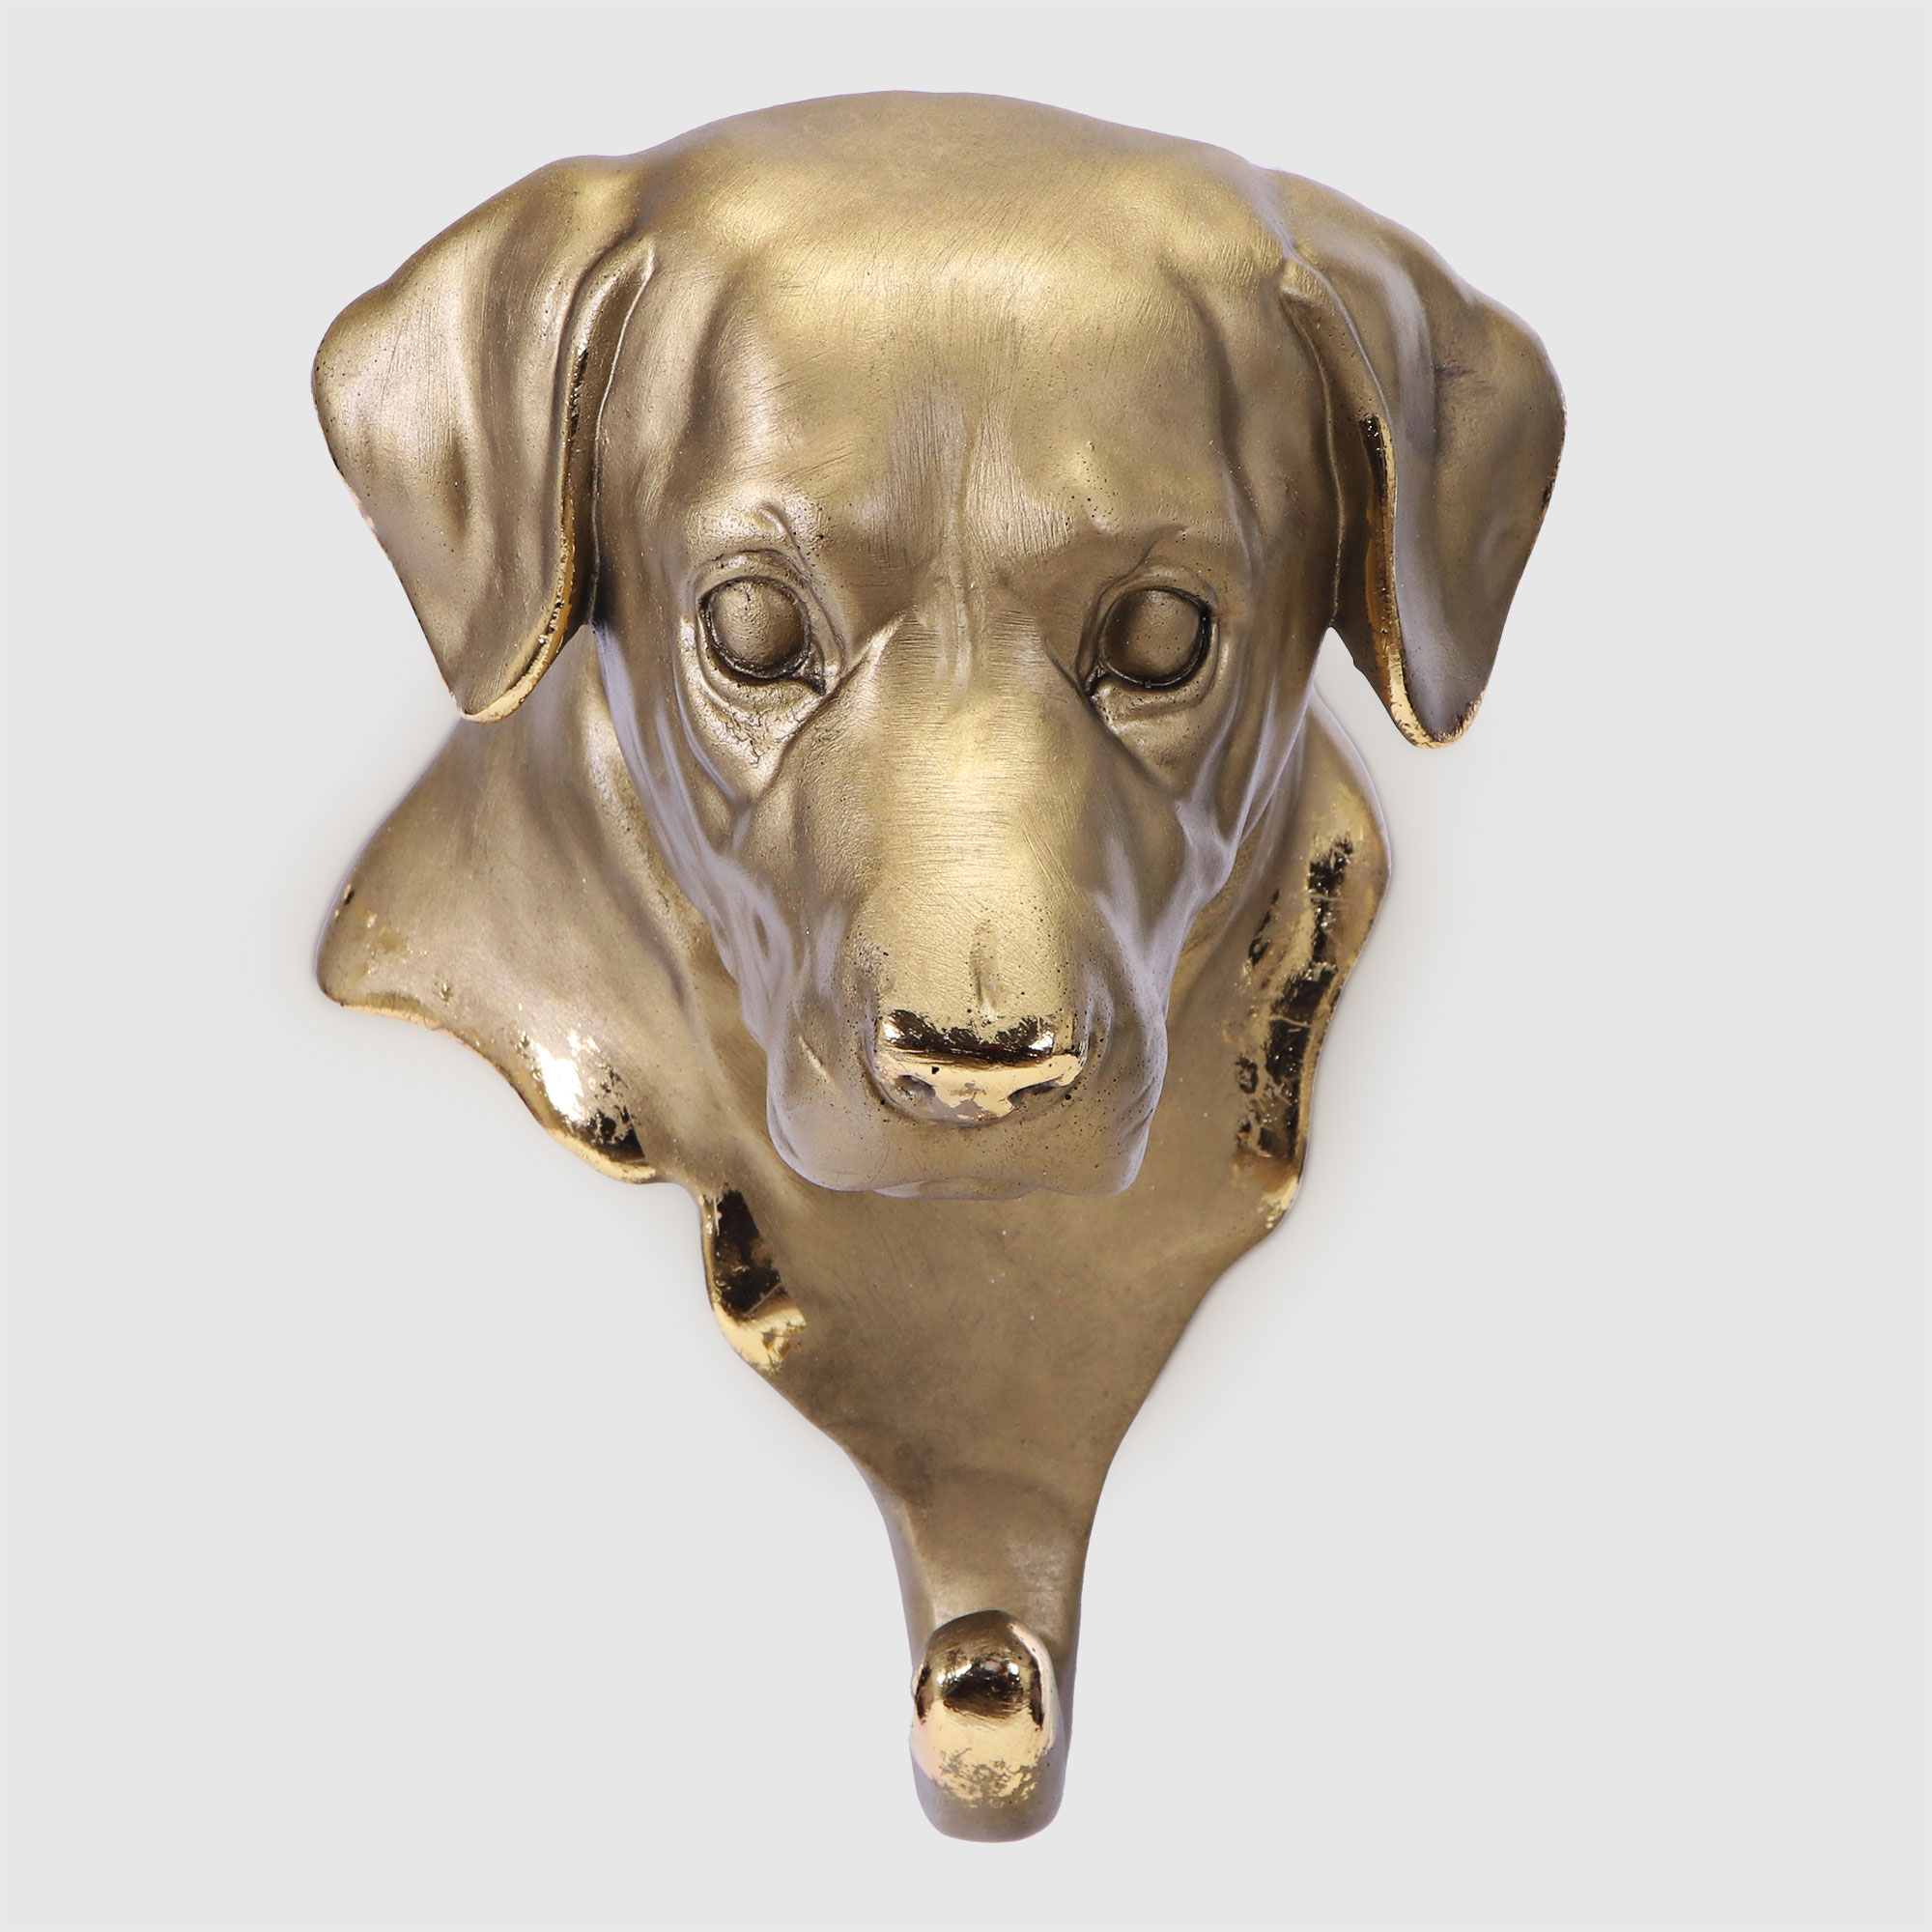 Вешалка настенная Тпк полиформ голова собаки бронзовая,высота 20 см вешалка настенная тпк полиформ голова слона h 20 см